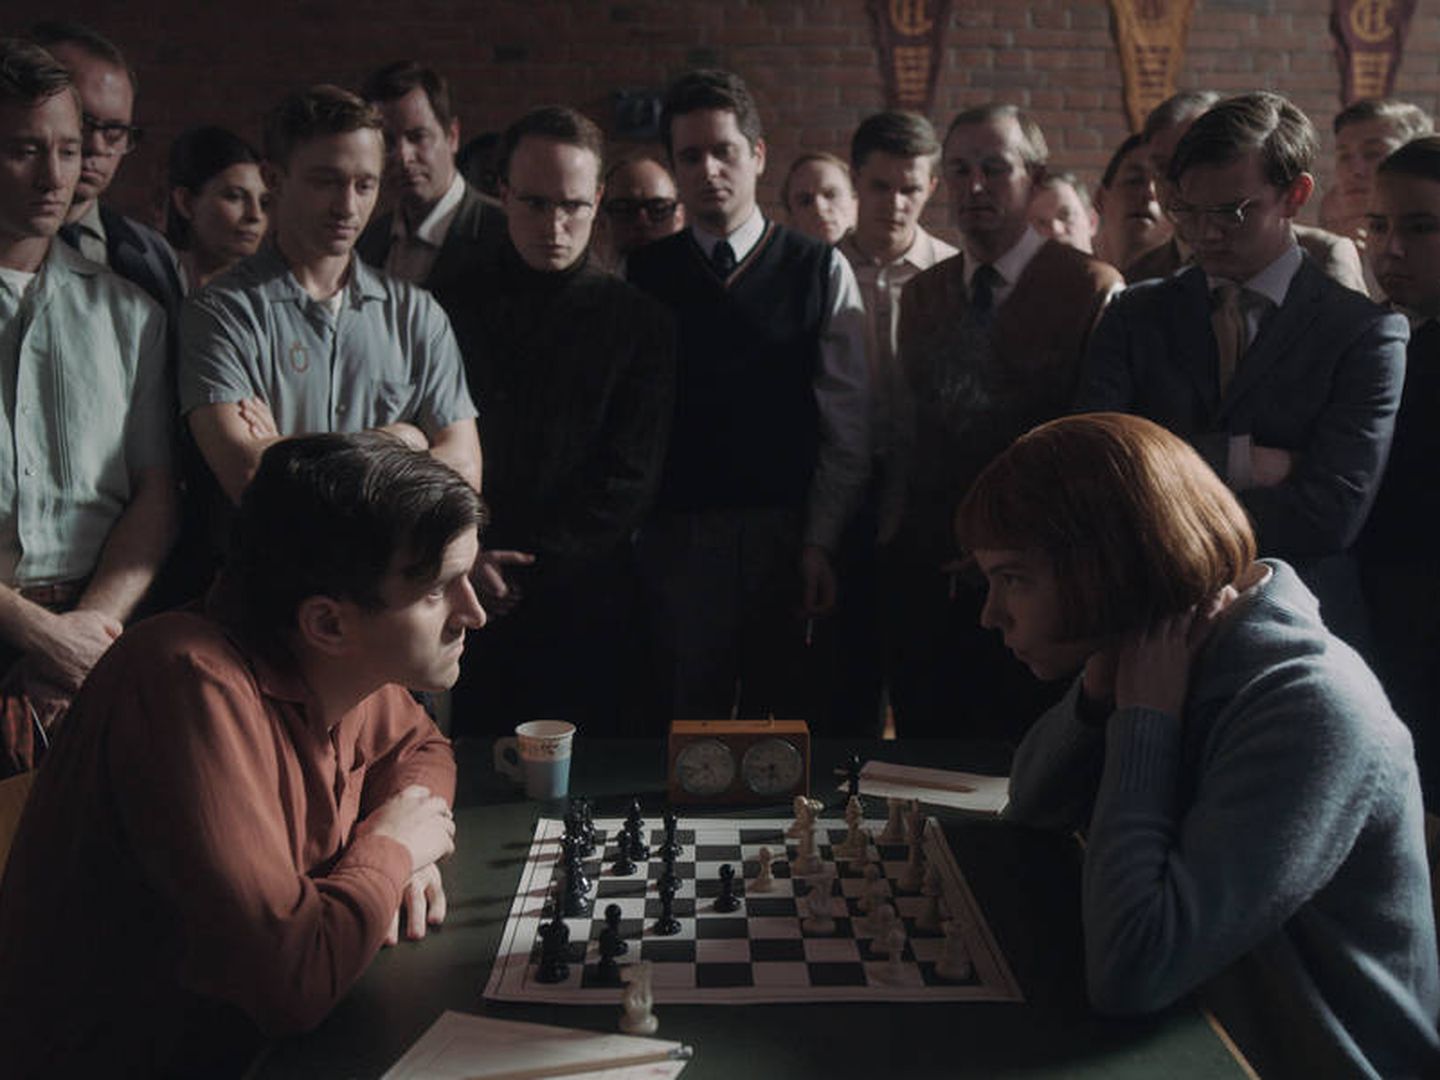 Gambito de dama: 4 claves de la exitosa serie para quienes no son expertos  en ajedrez - BBC News Mundo